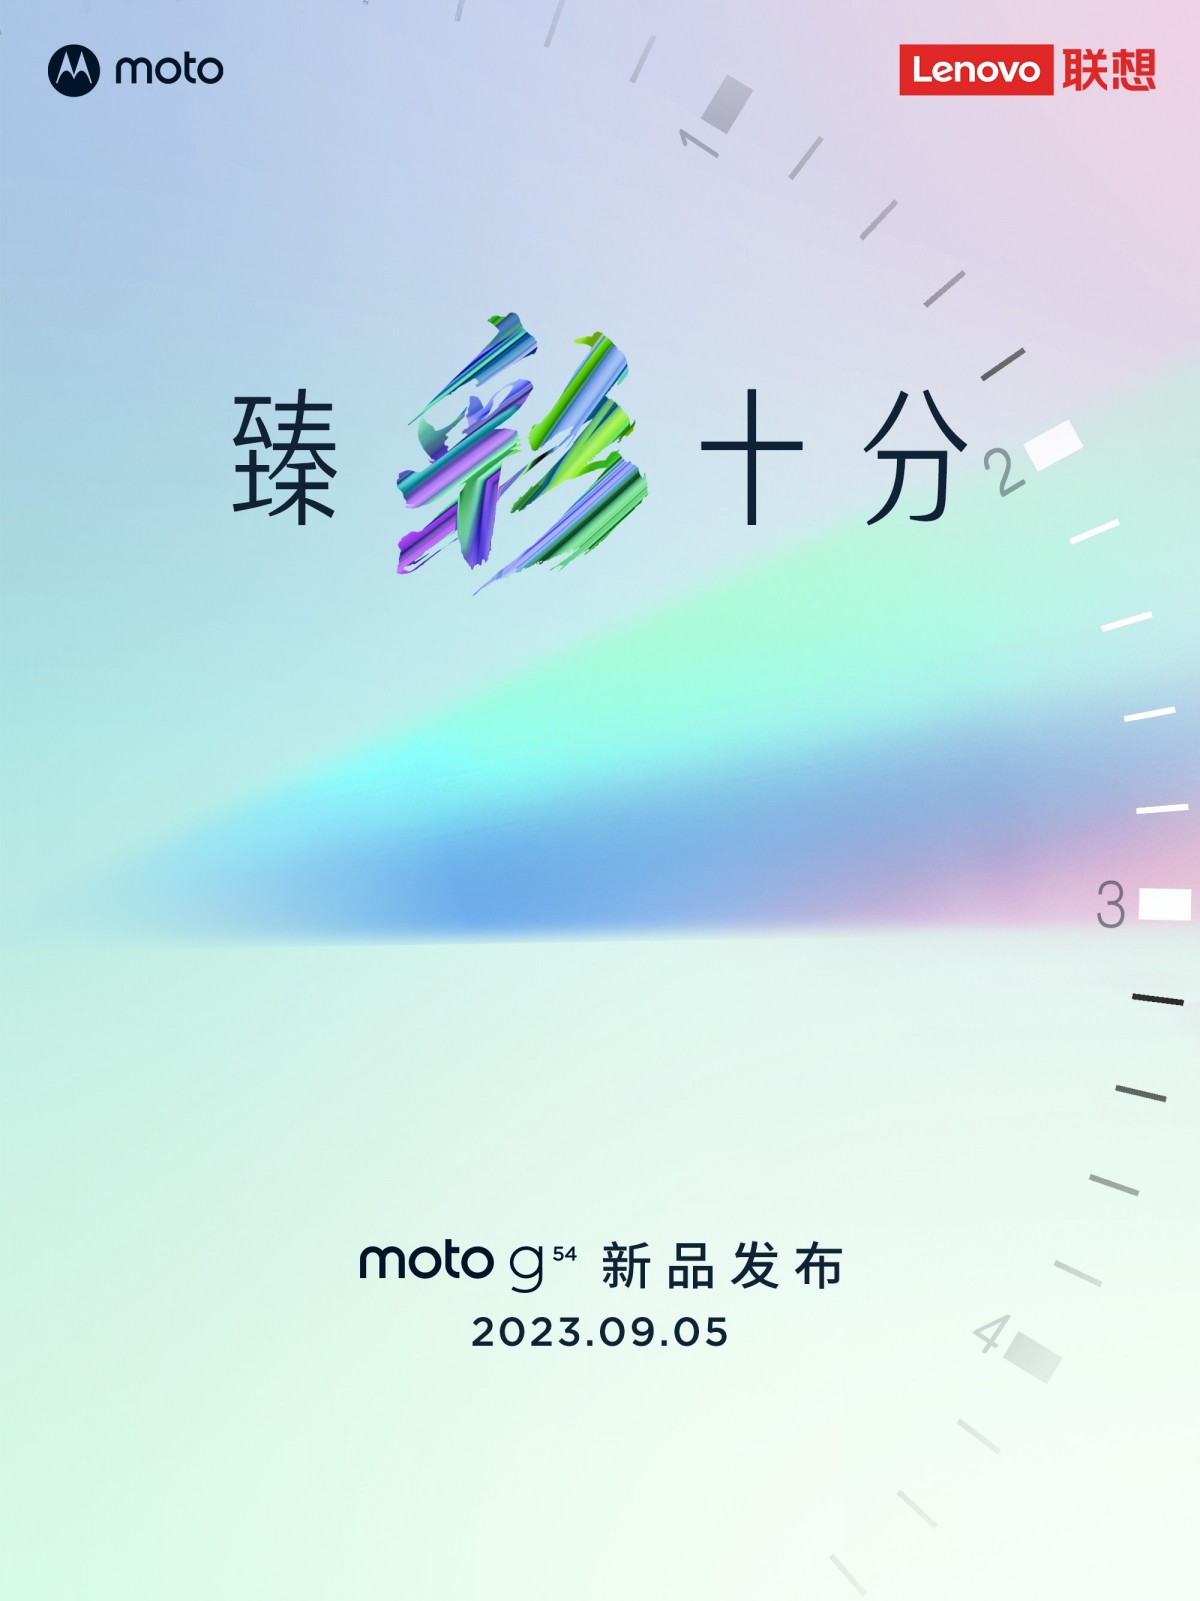 Moto G54 teaser